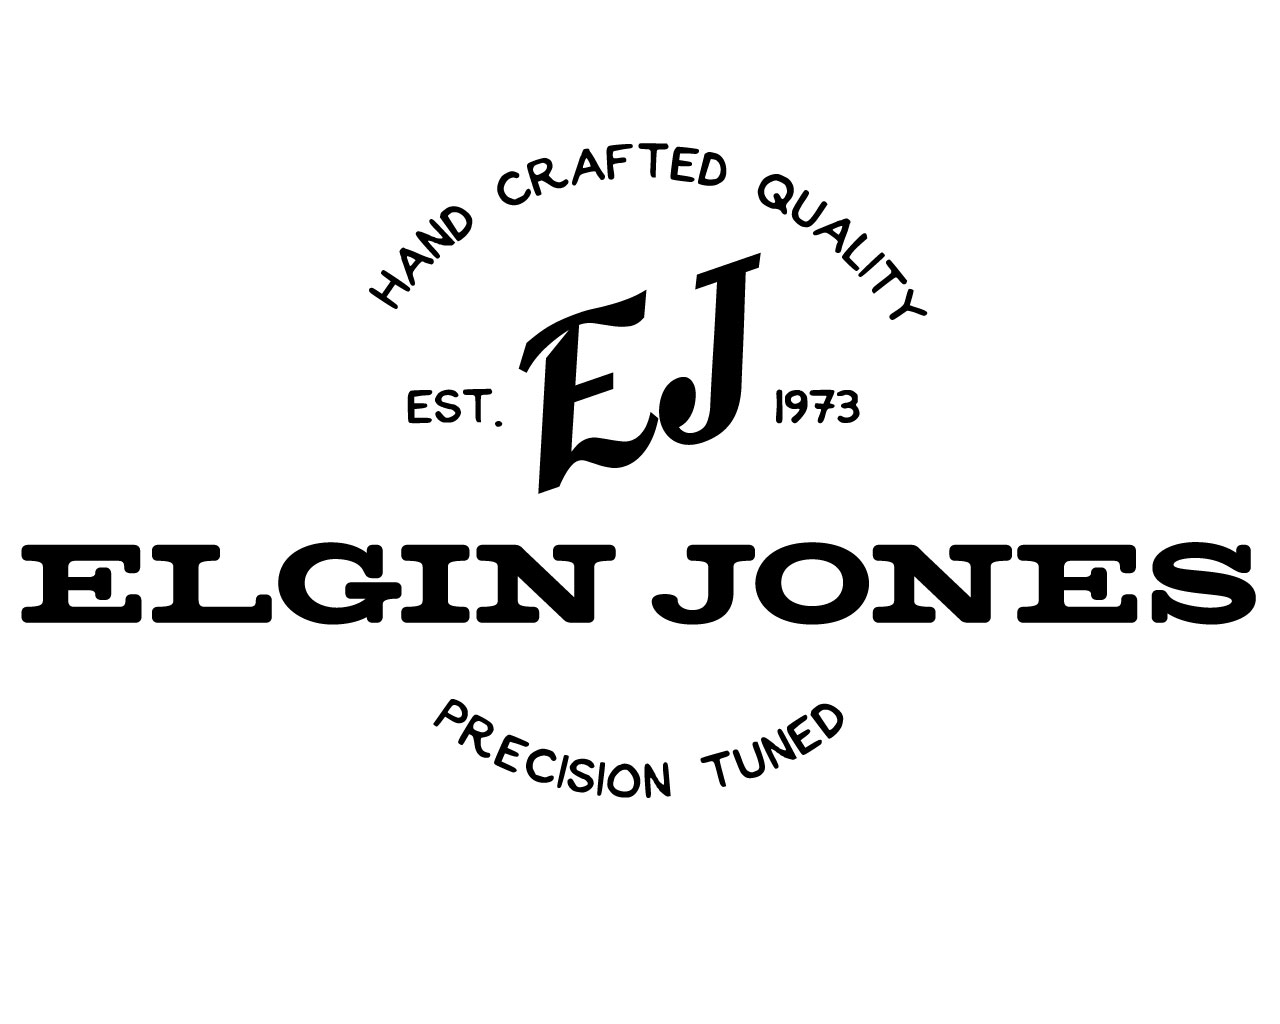 Elgin Jones